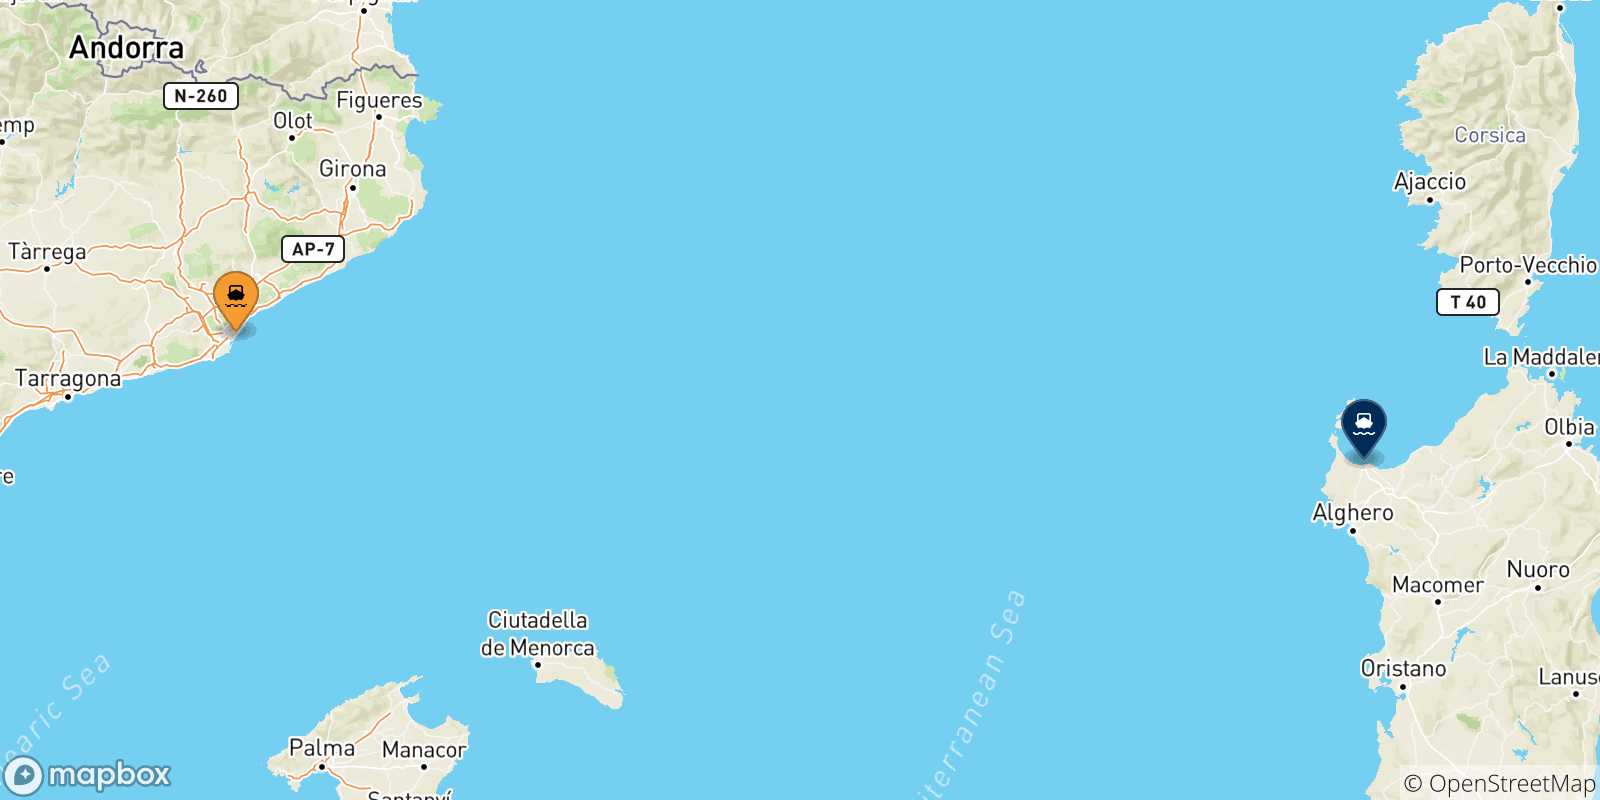 Mappa delle possibili rotte tra la Spagna e Porto Torres